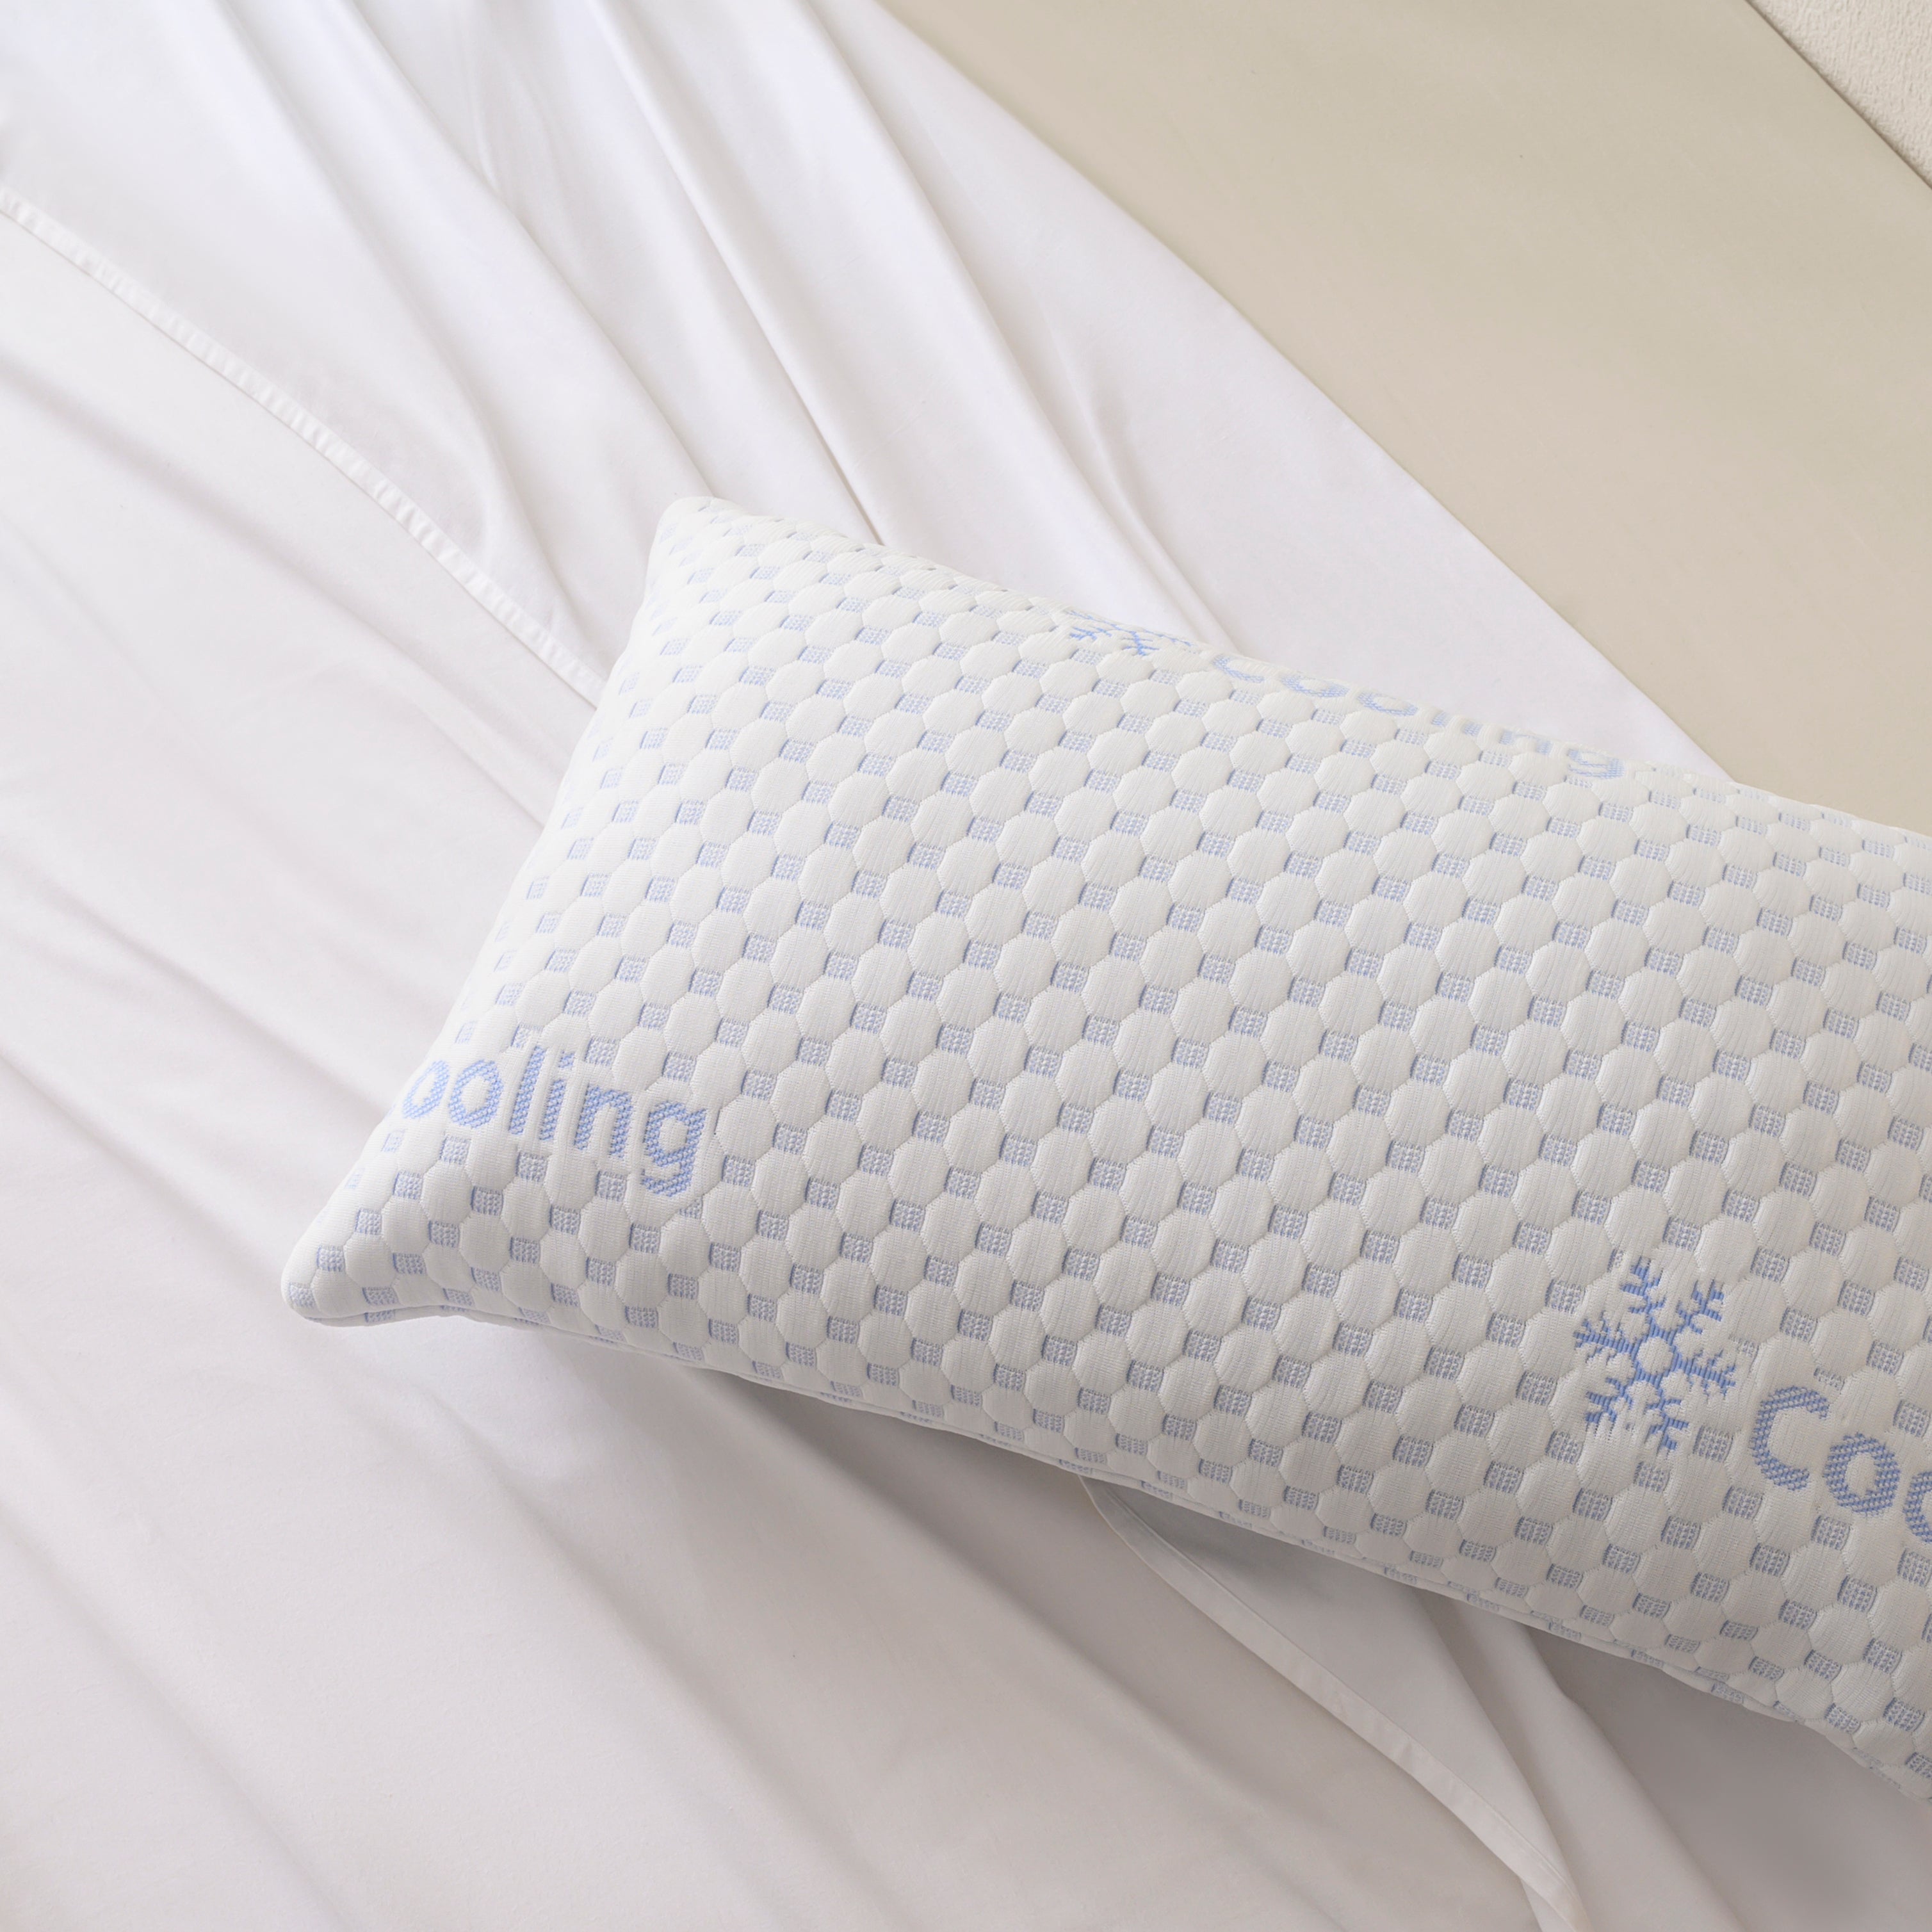 Memory Foam Bed Pillow